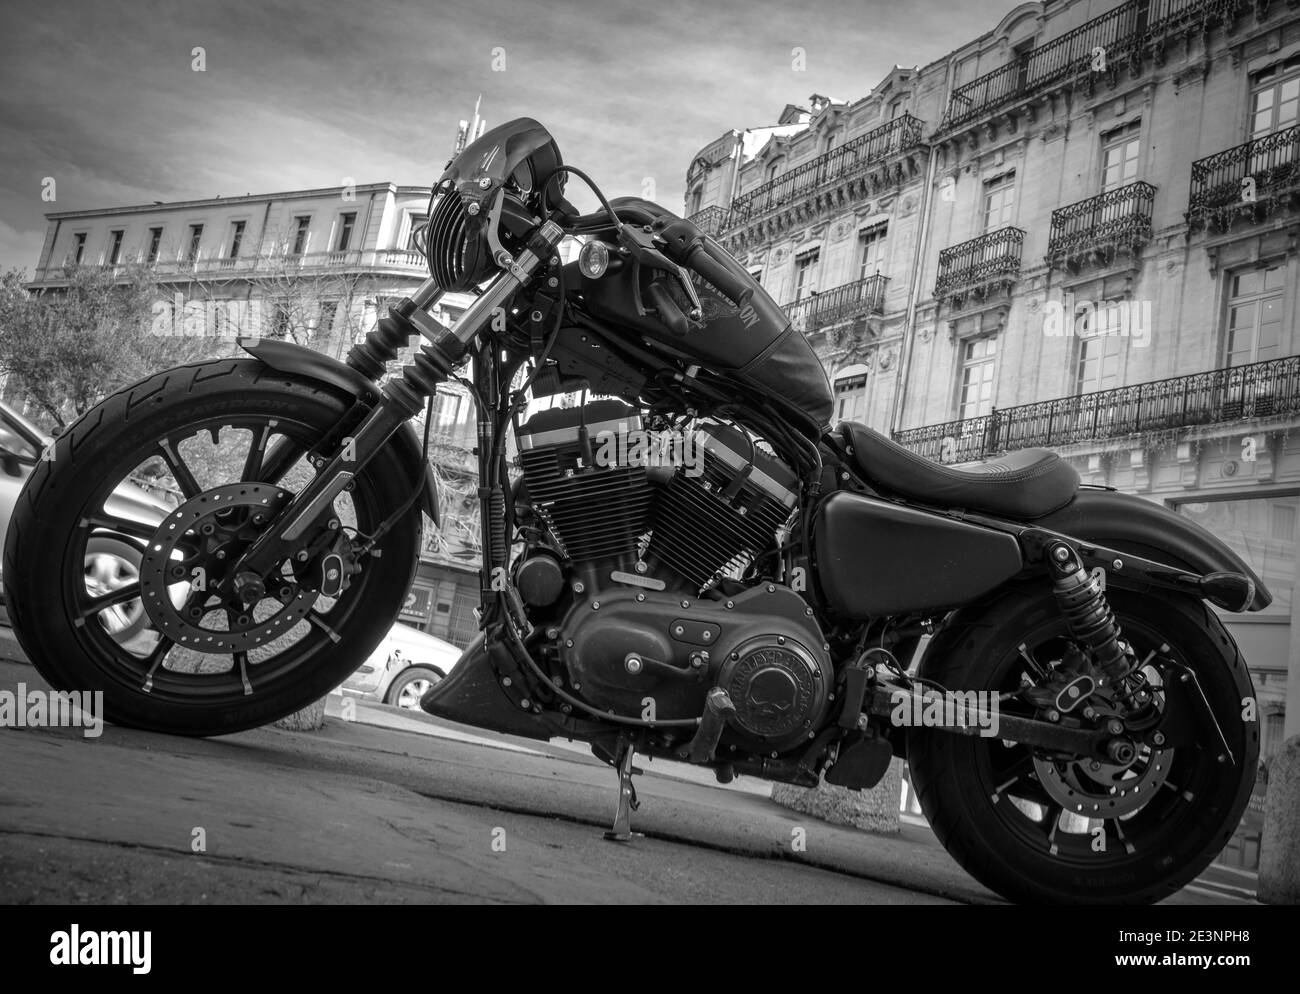 Harley Davidson moto dans une rue dans une ville française avec de vieux bâtiments historiques en arrière-plan - noir et blanc Banque D'Images